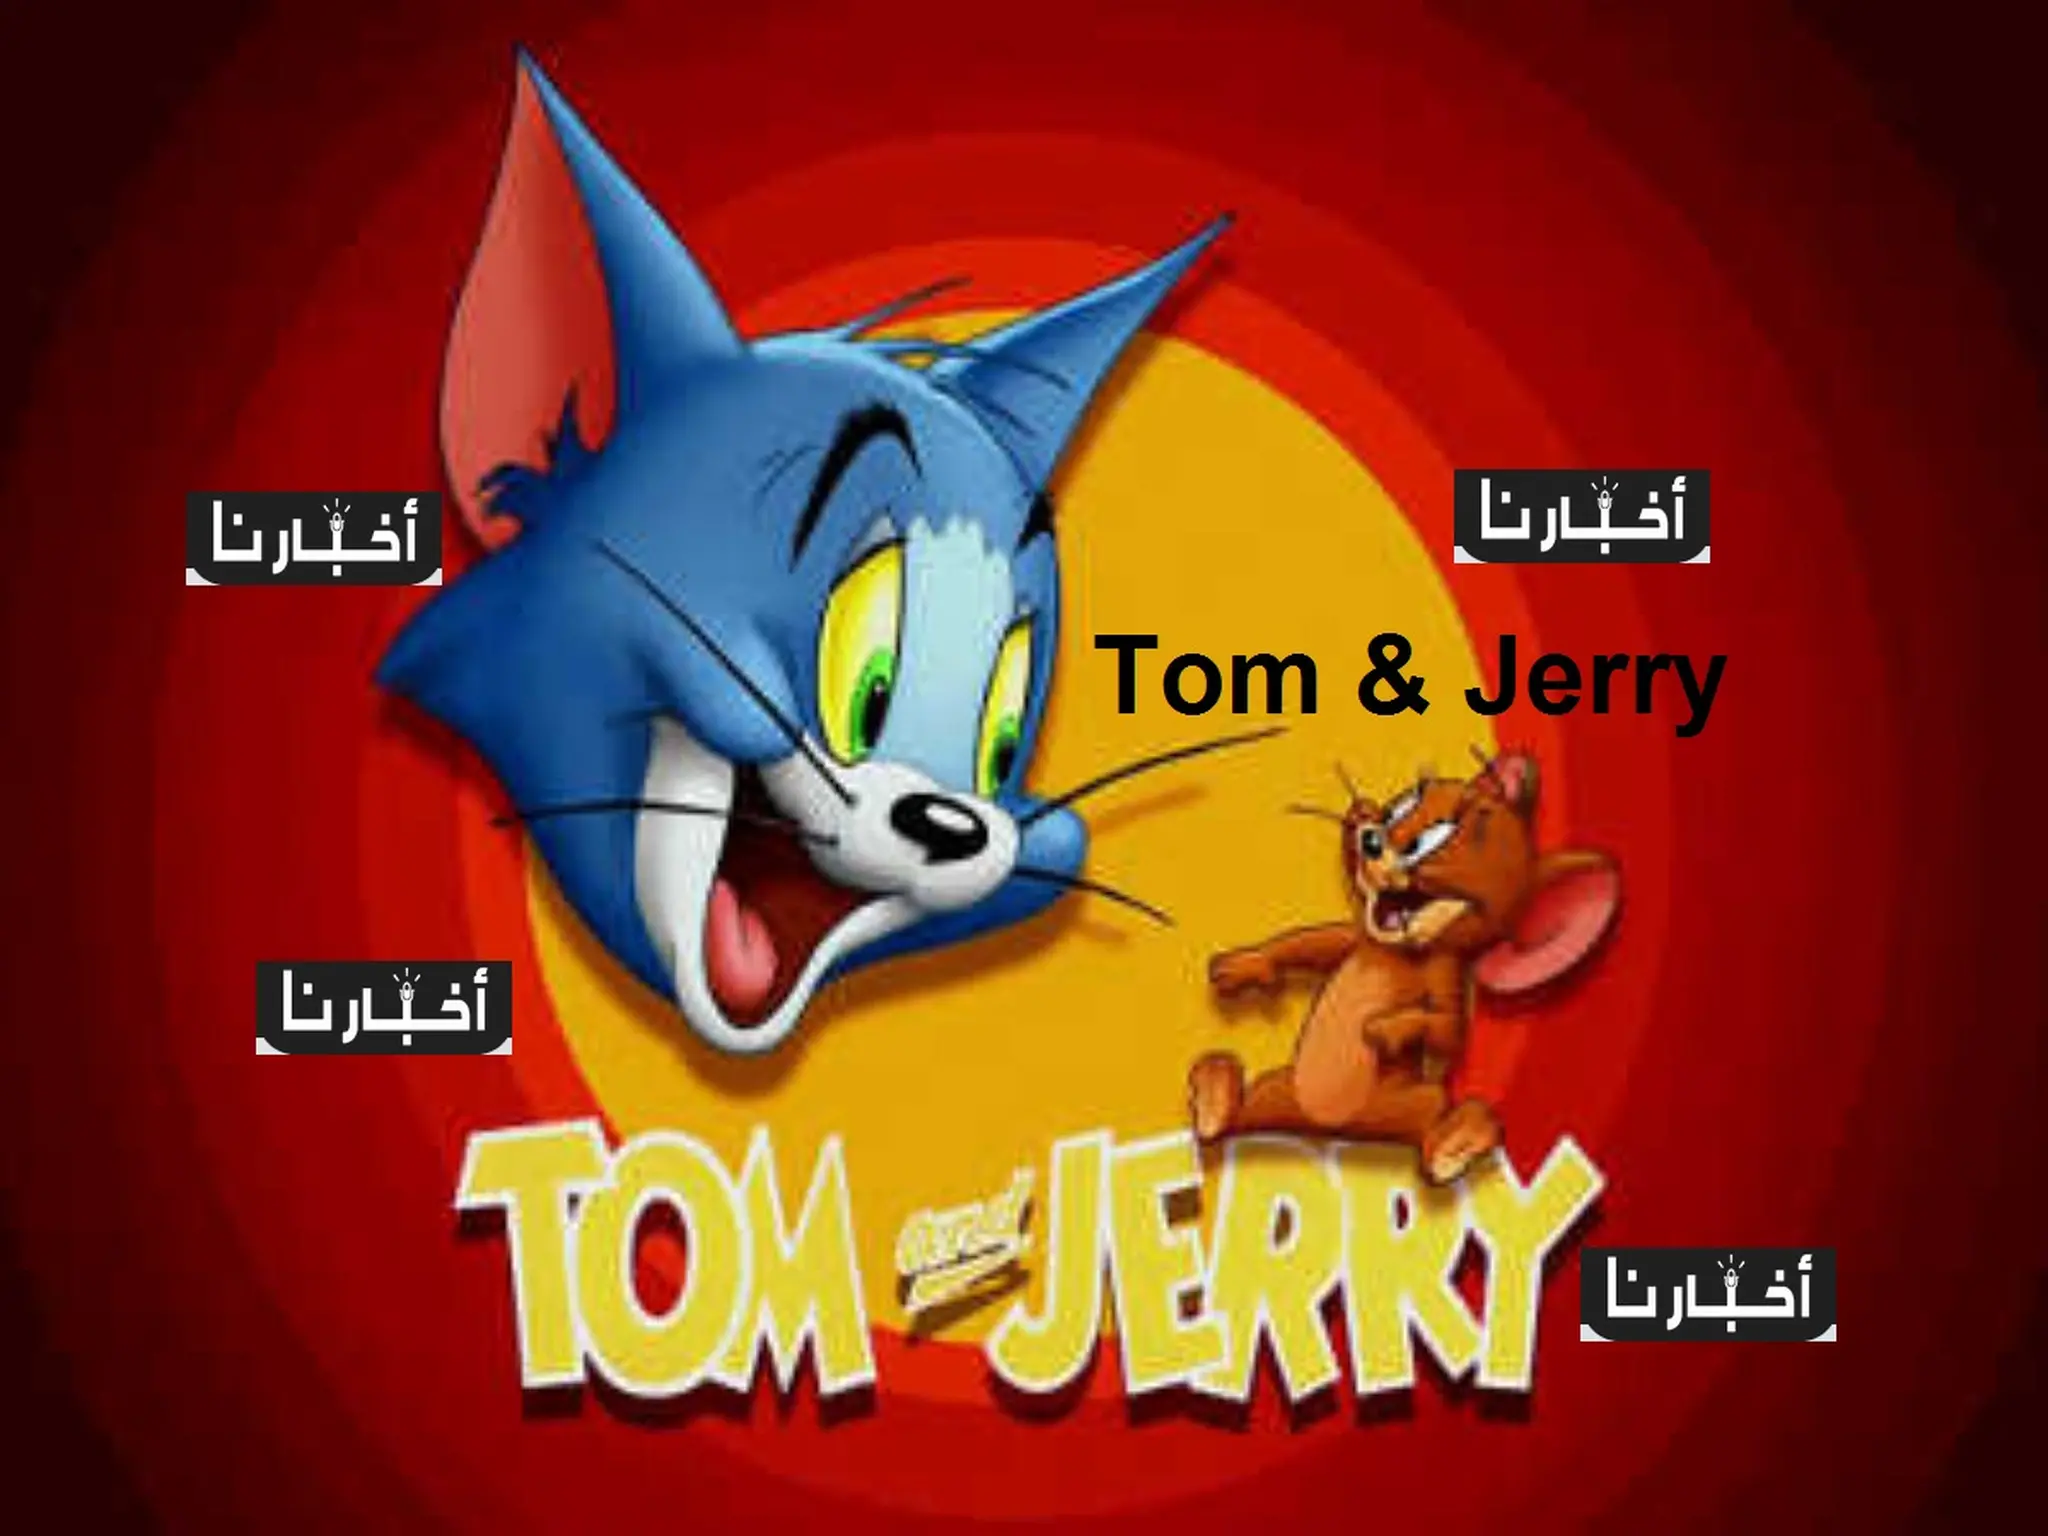 تردد قناة كرتون توم وجيري Tom & Jerry لشهر يونيو 2022 علي نايل سات بجودة HD.. صورة نقية